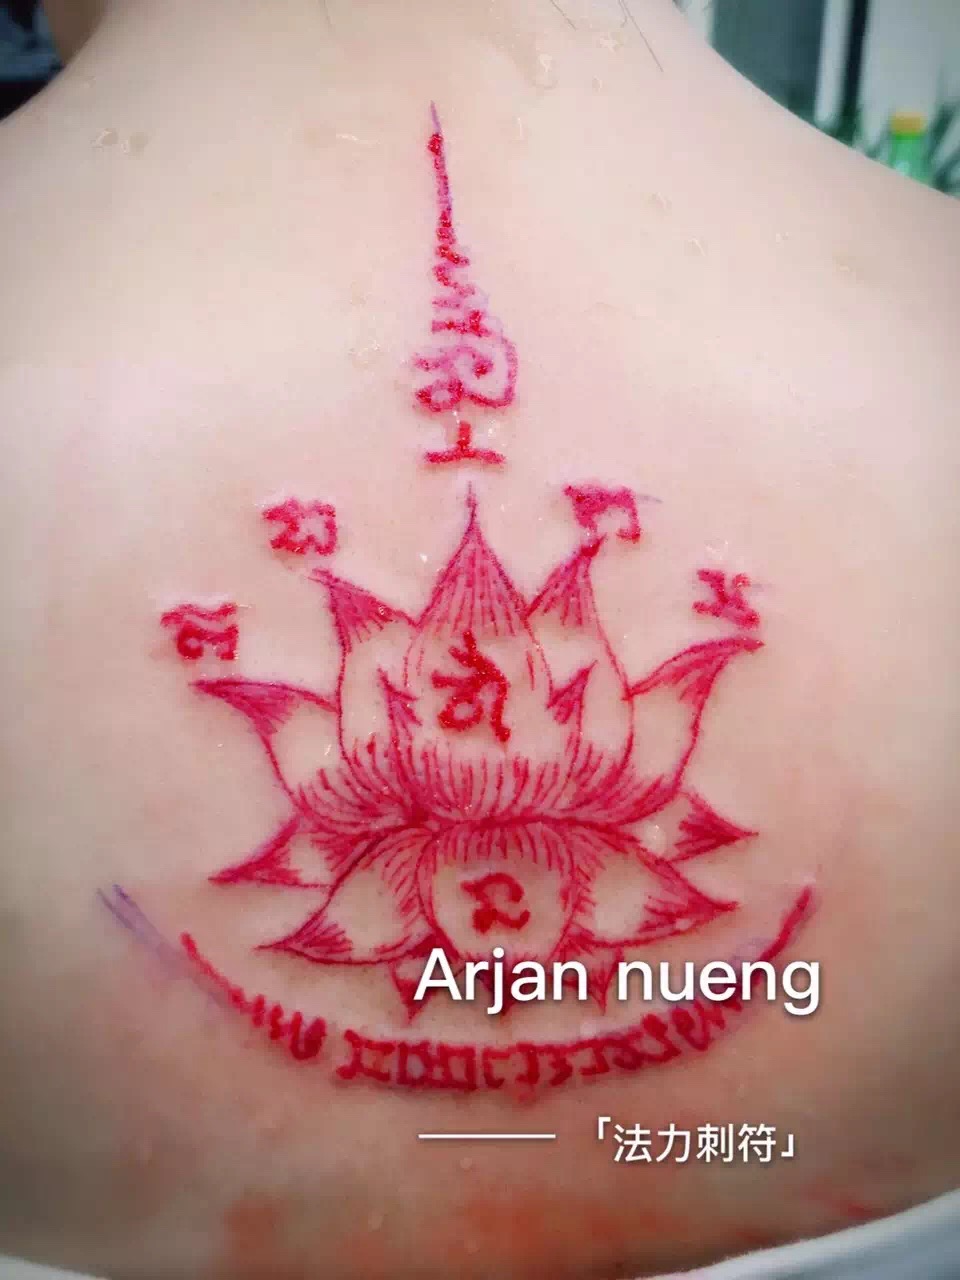 泰式红莲花纹身内容图片分享